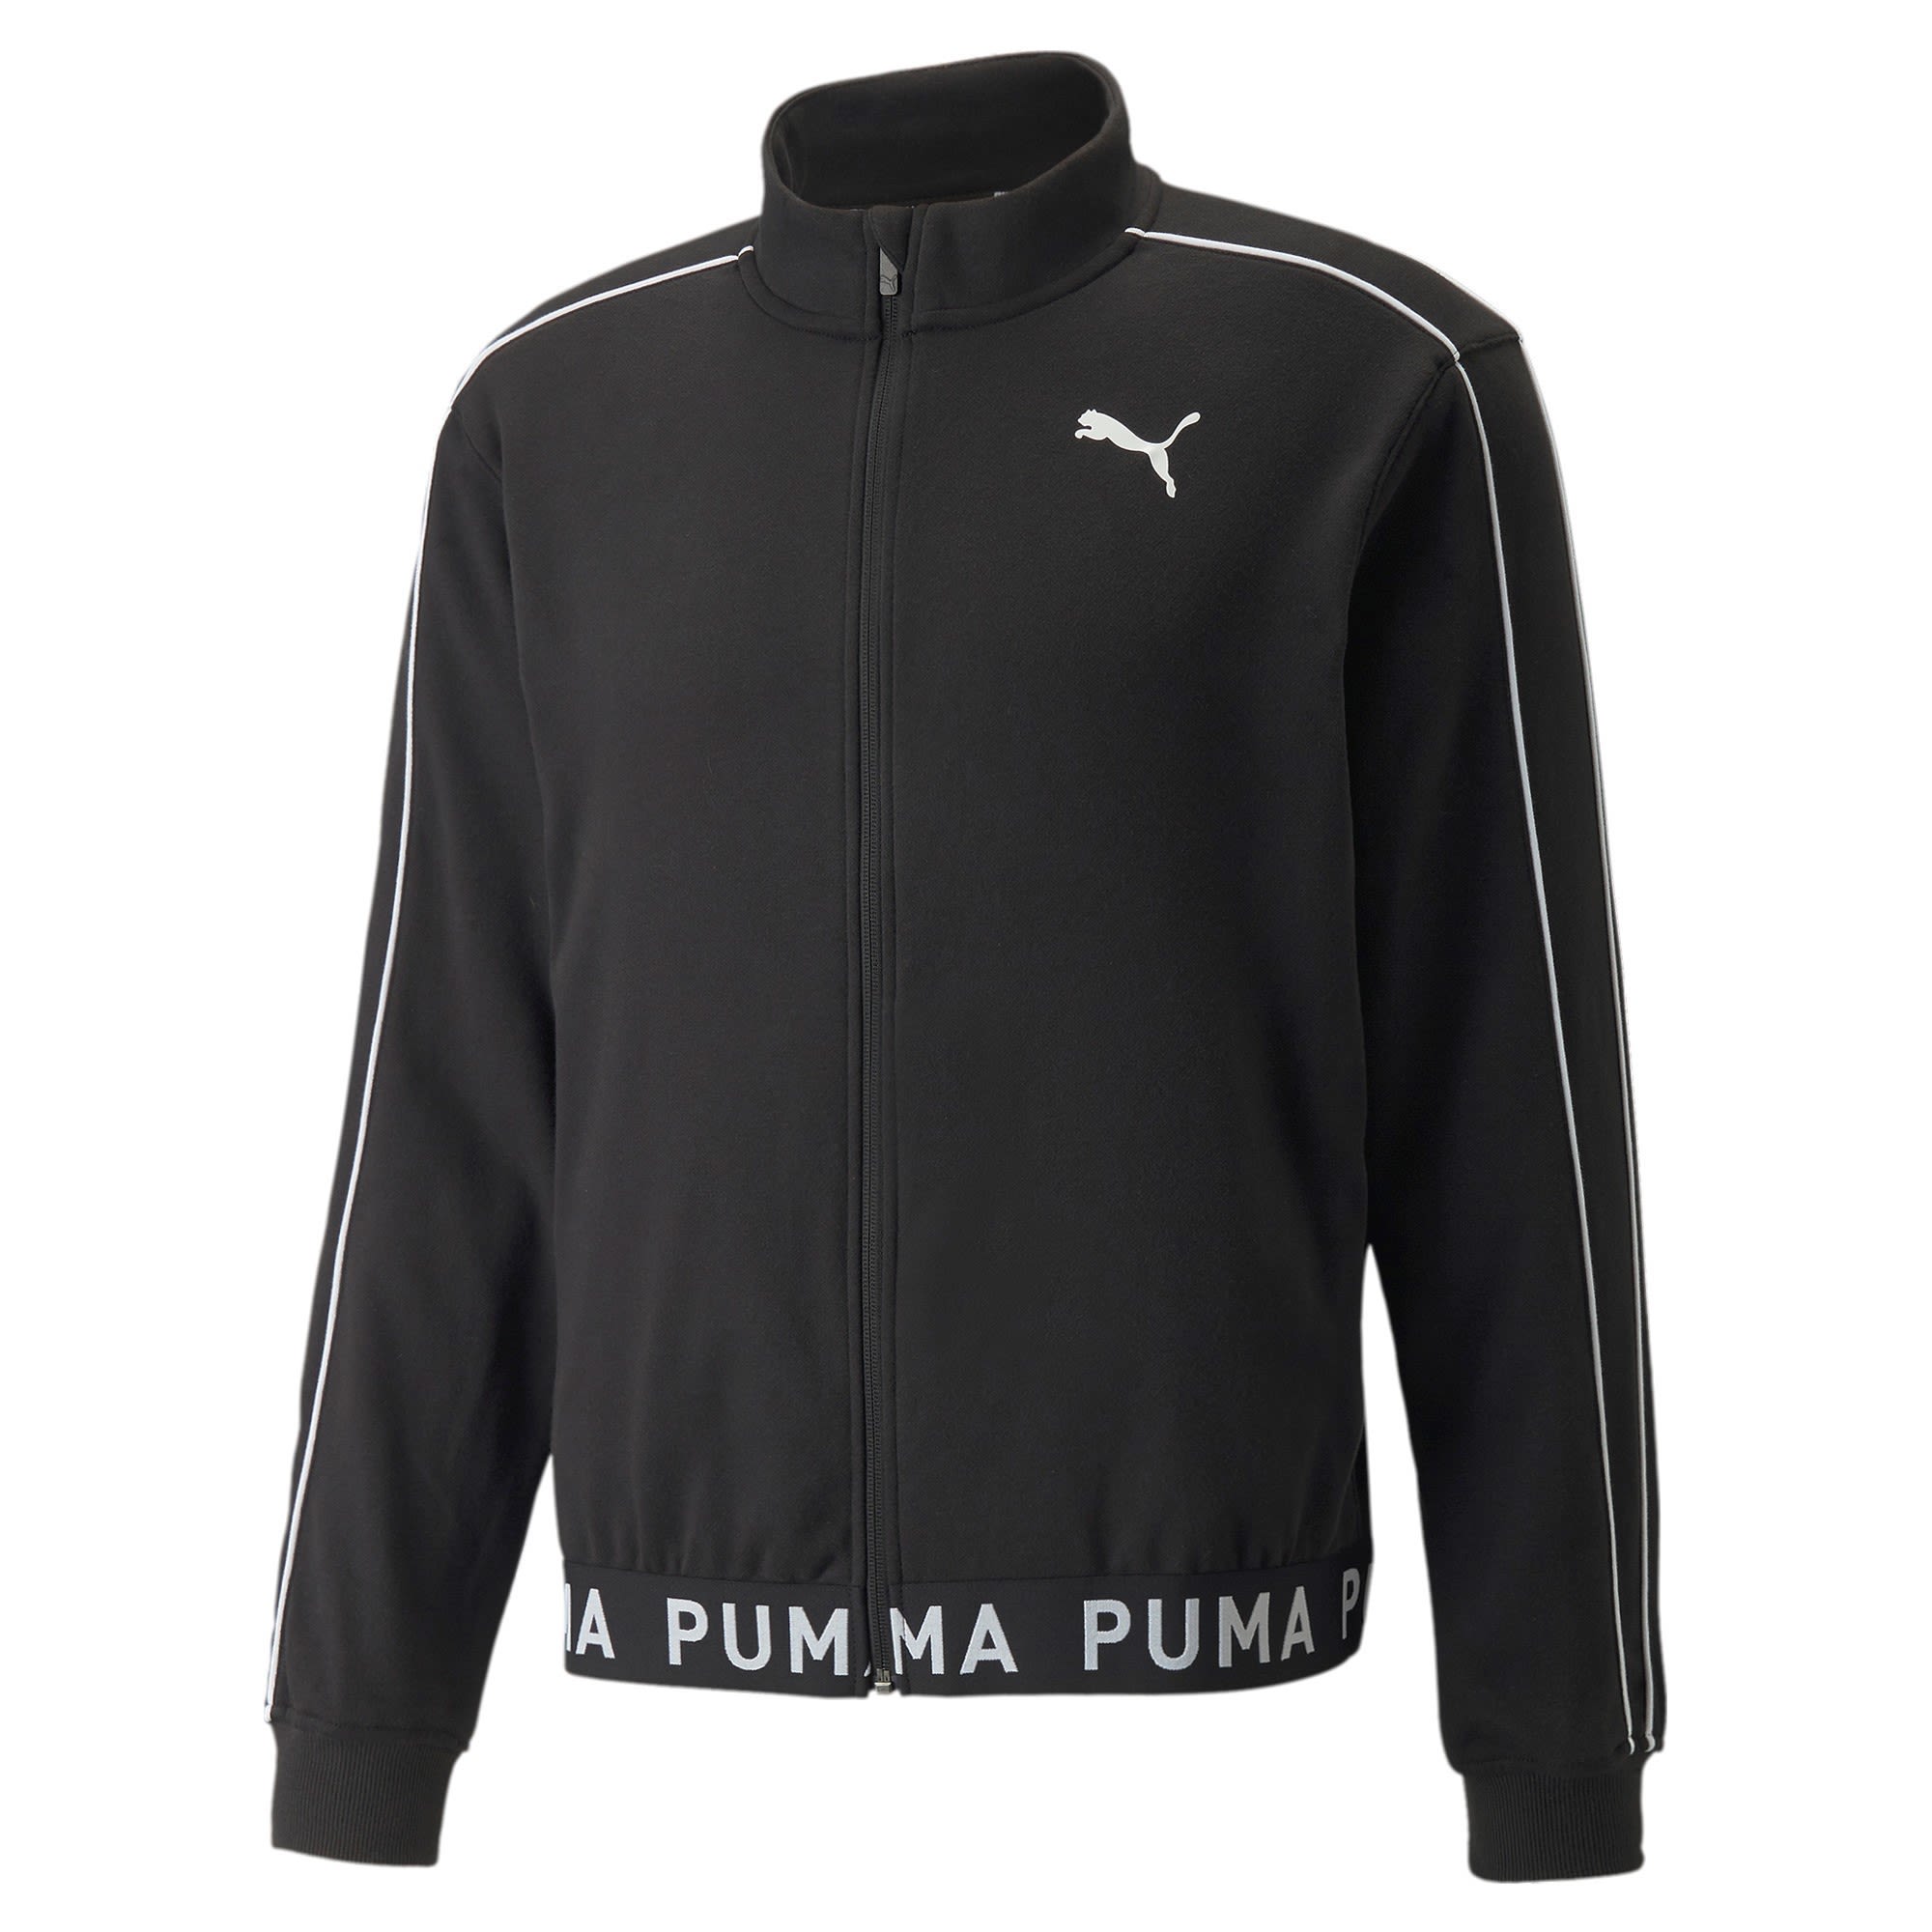 Puma Train Full Zip Jacket Schwarz- Male Anoraks- Grsse 3XL - Farbe Puma Black